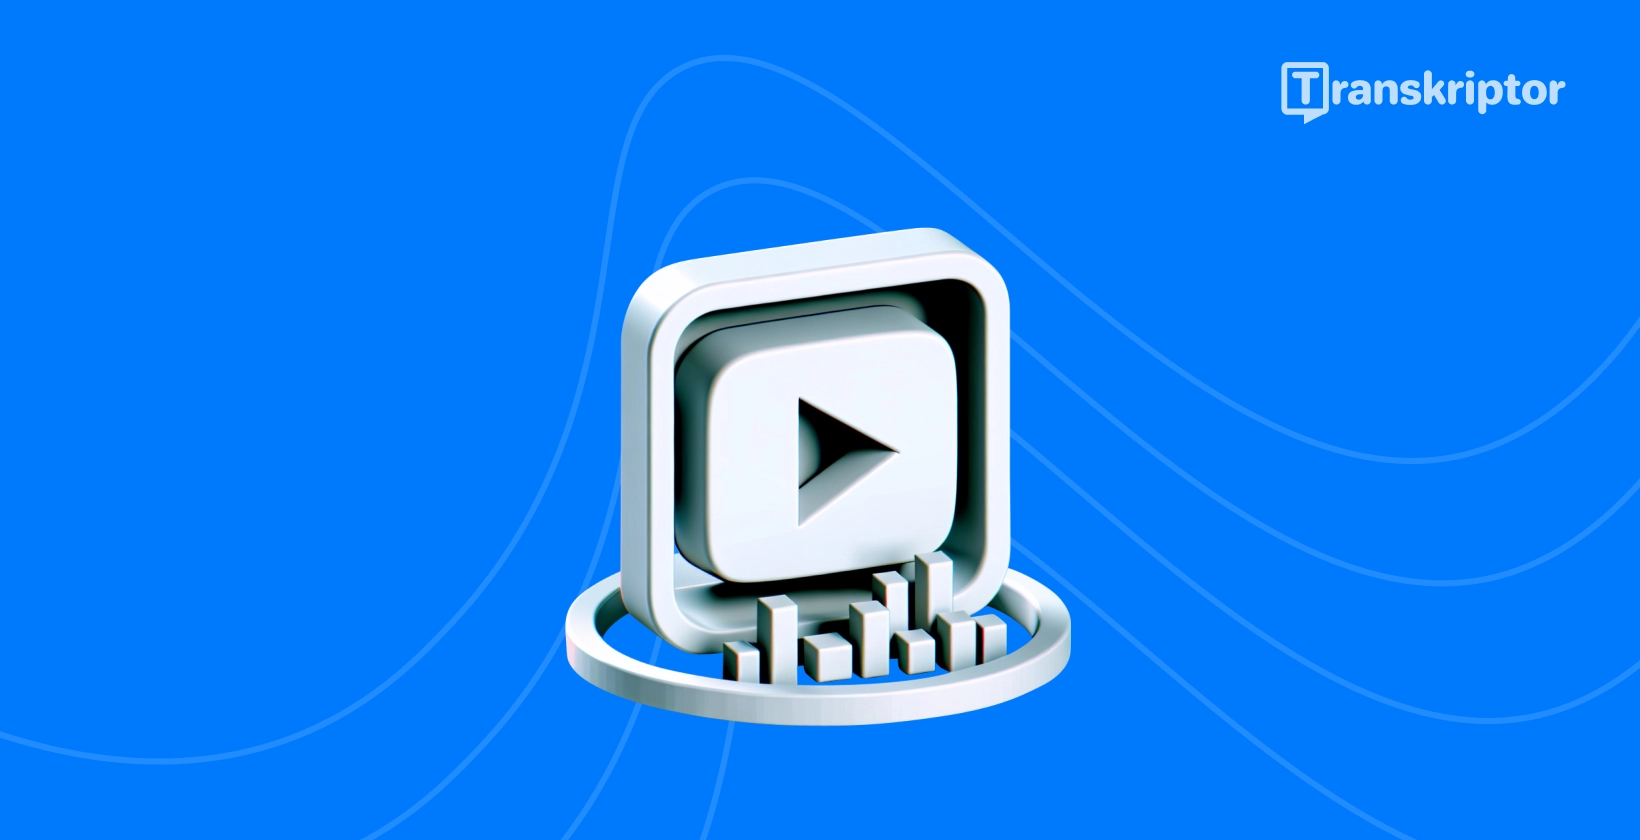 Paleidimo mygtukas ir transkripcija vaizdiniai iliustravimo metodai, kaip efektyviai perrašyti YouTube vaizdo įrašus.